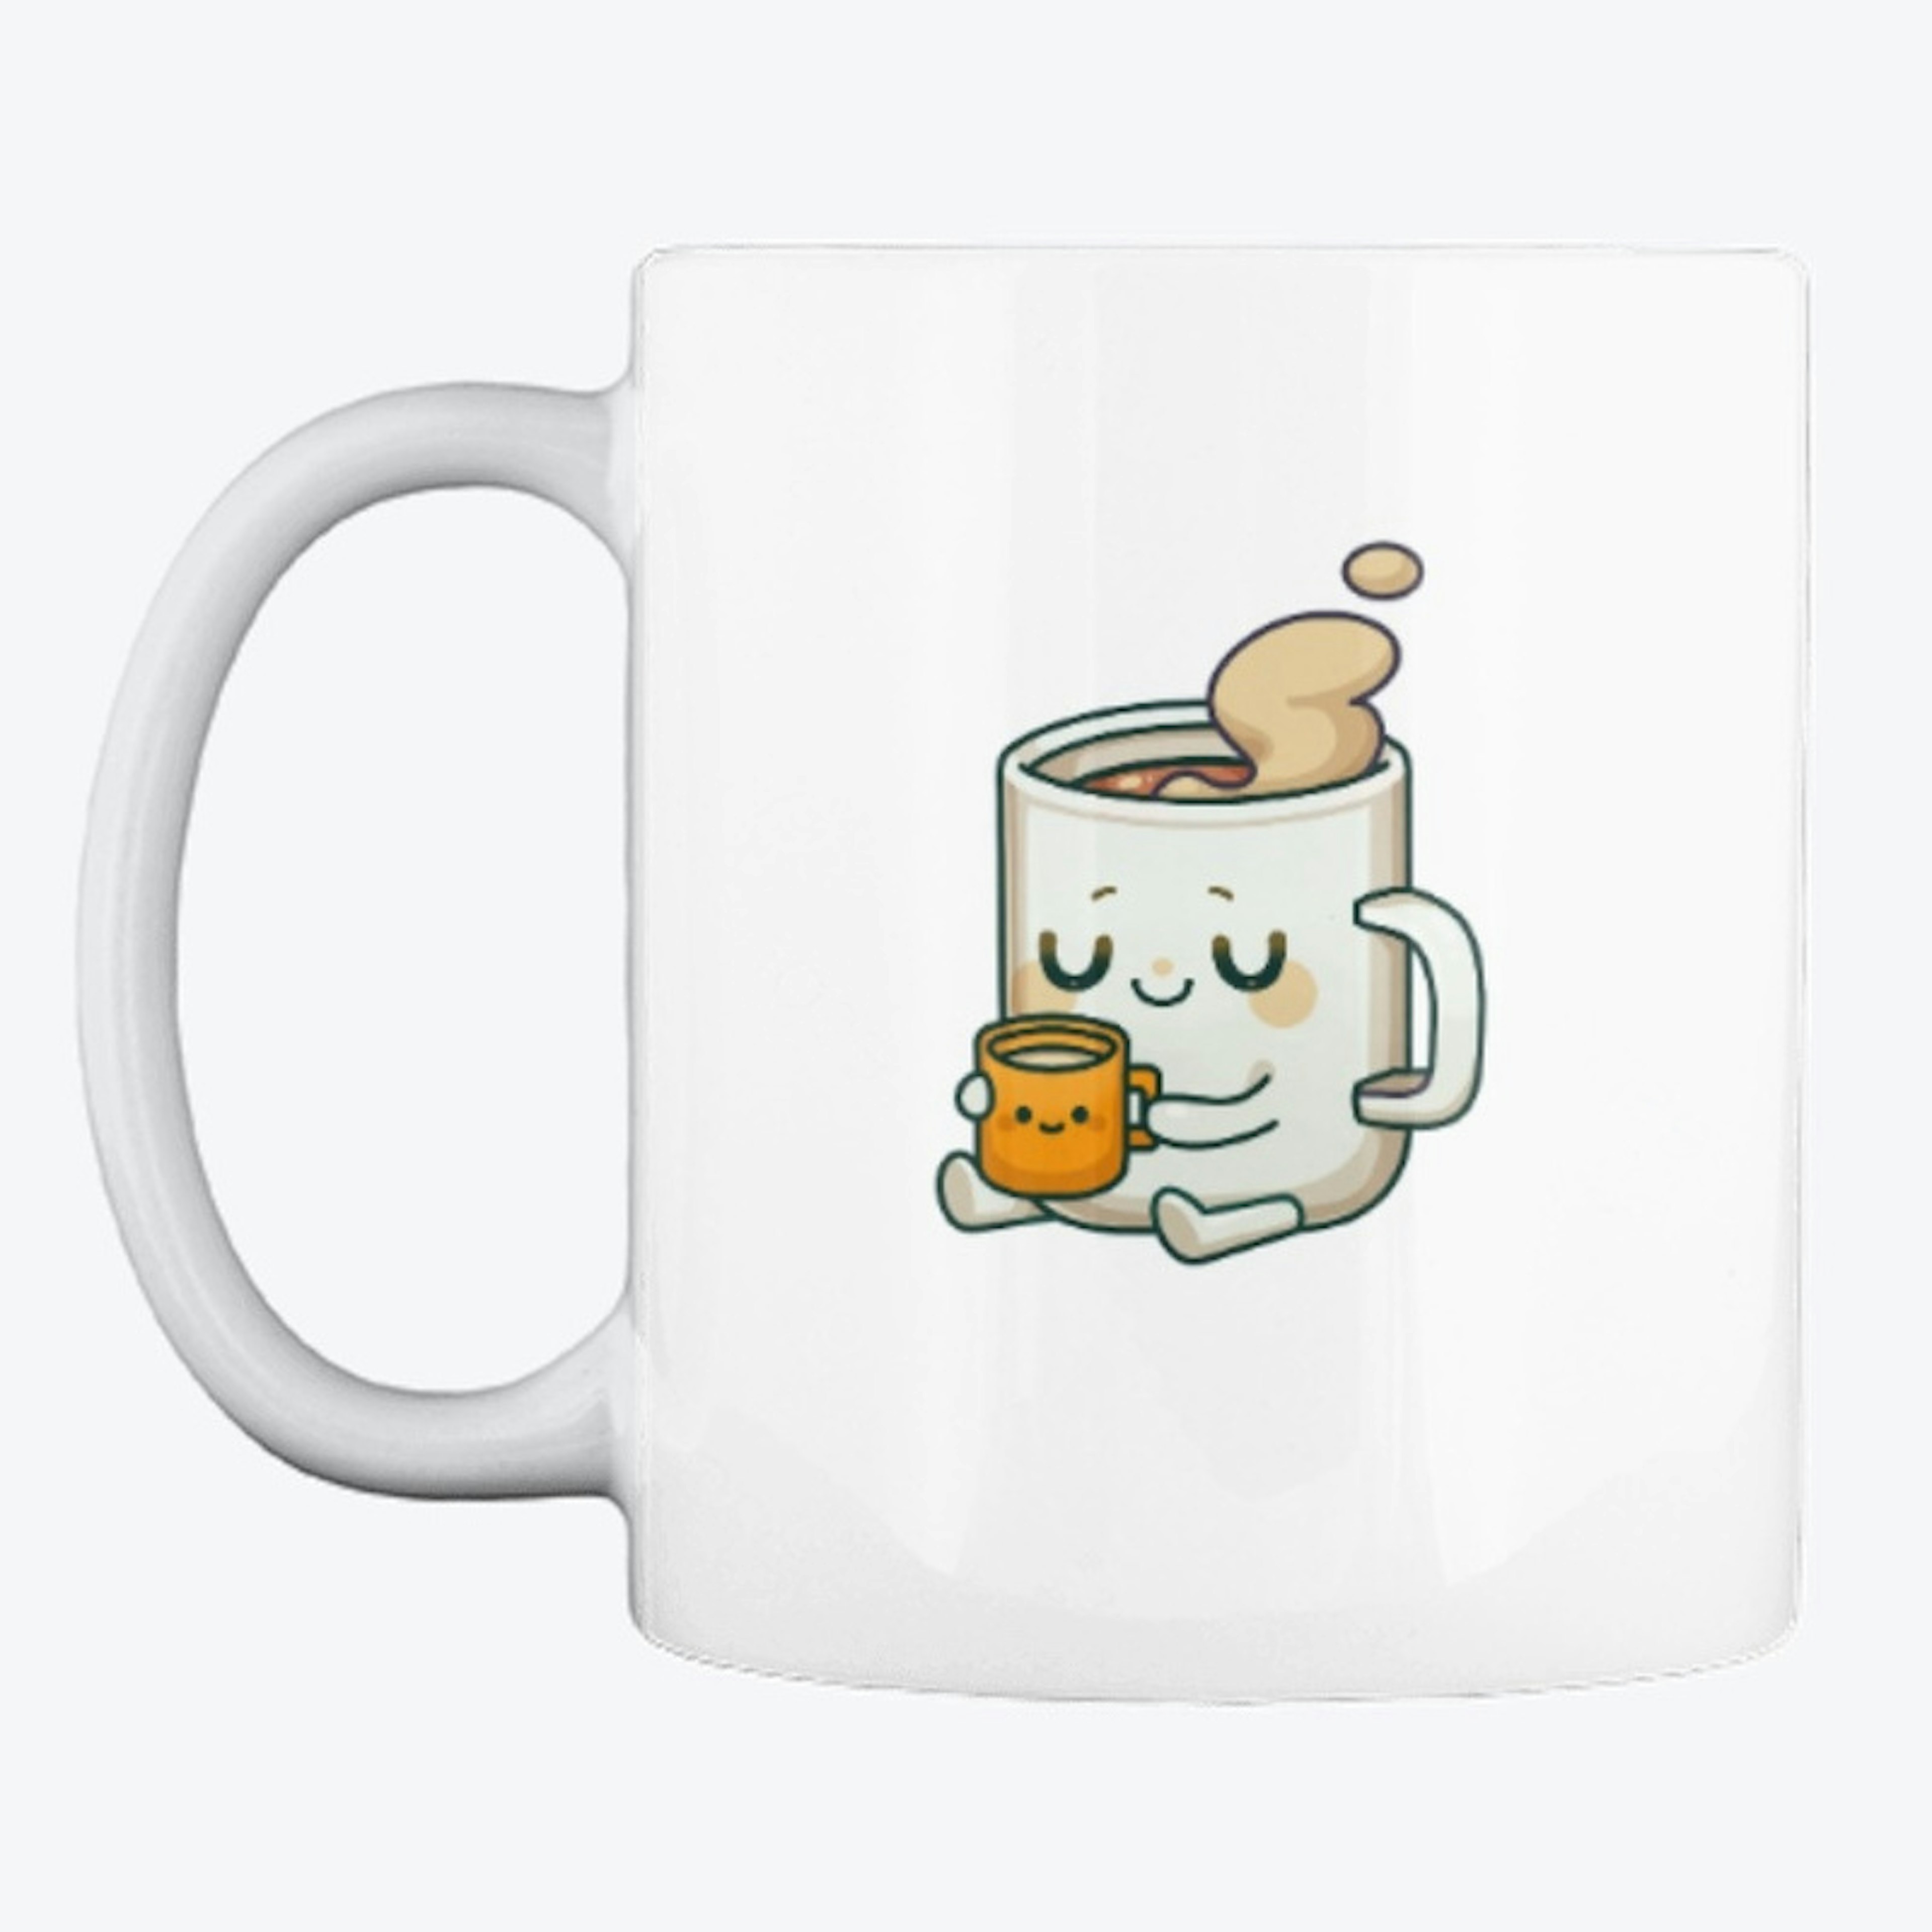 Le mug Le Mug qui boit un mug !